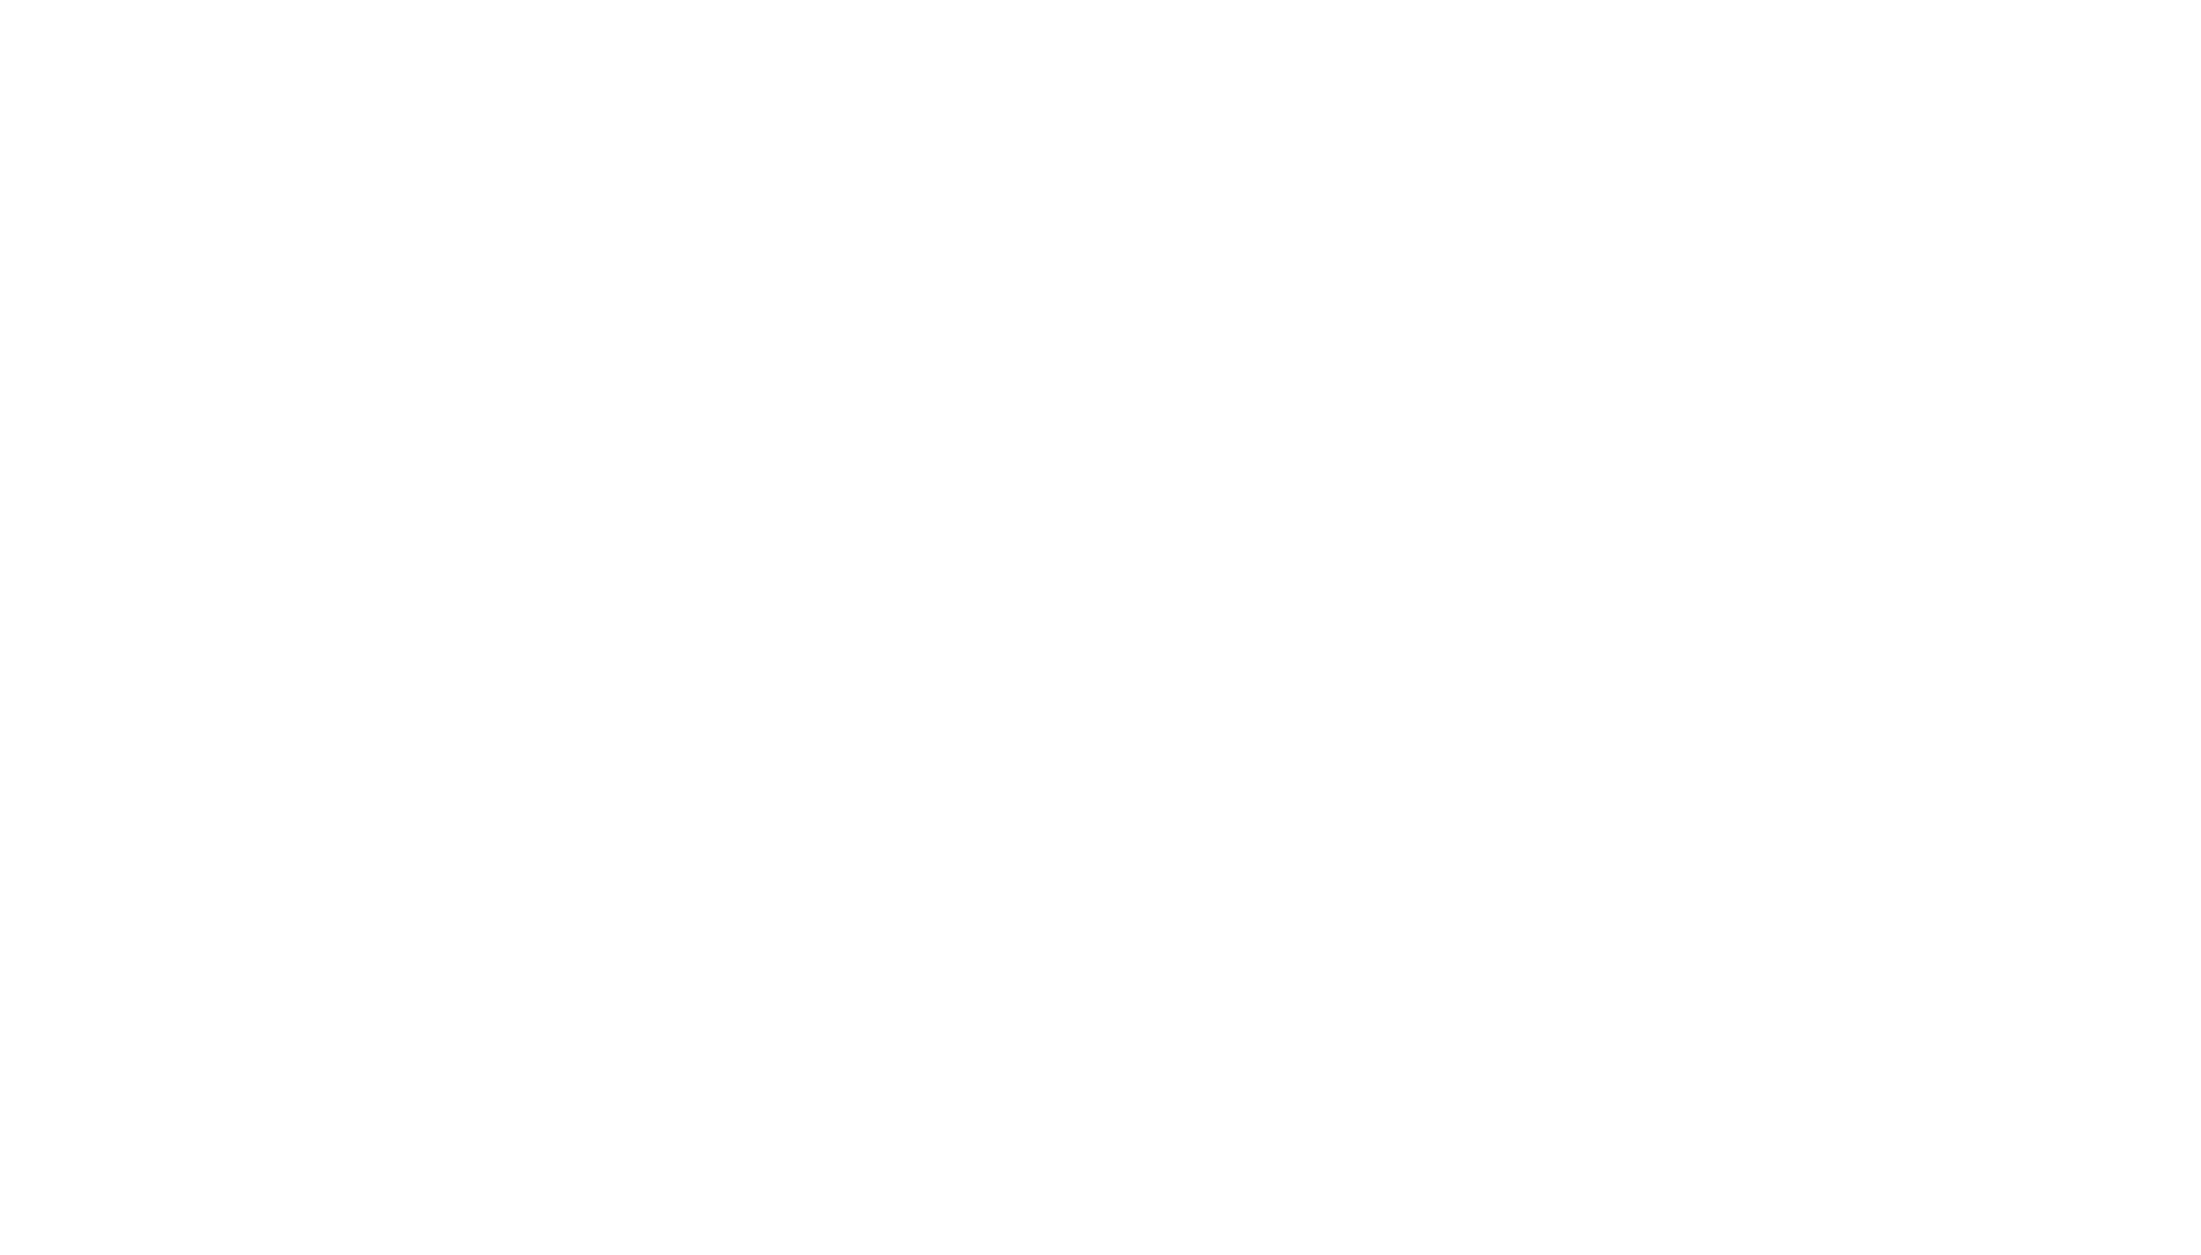 Follow Nicholas Toone at Soundcloud